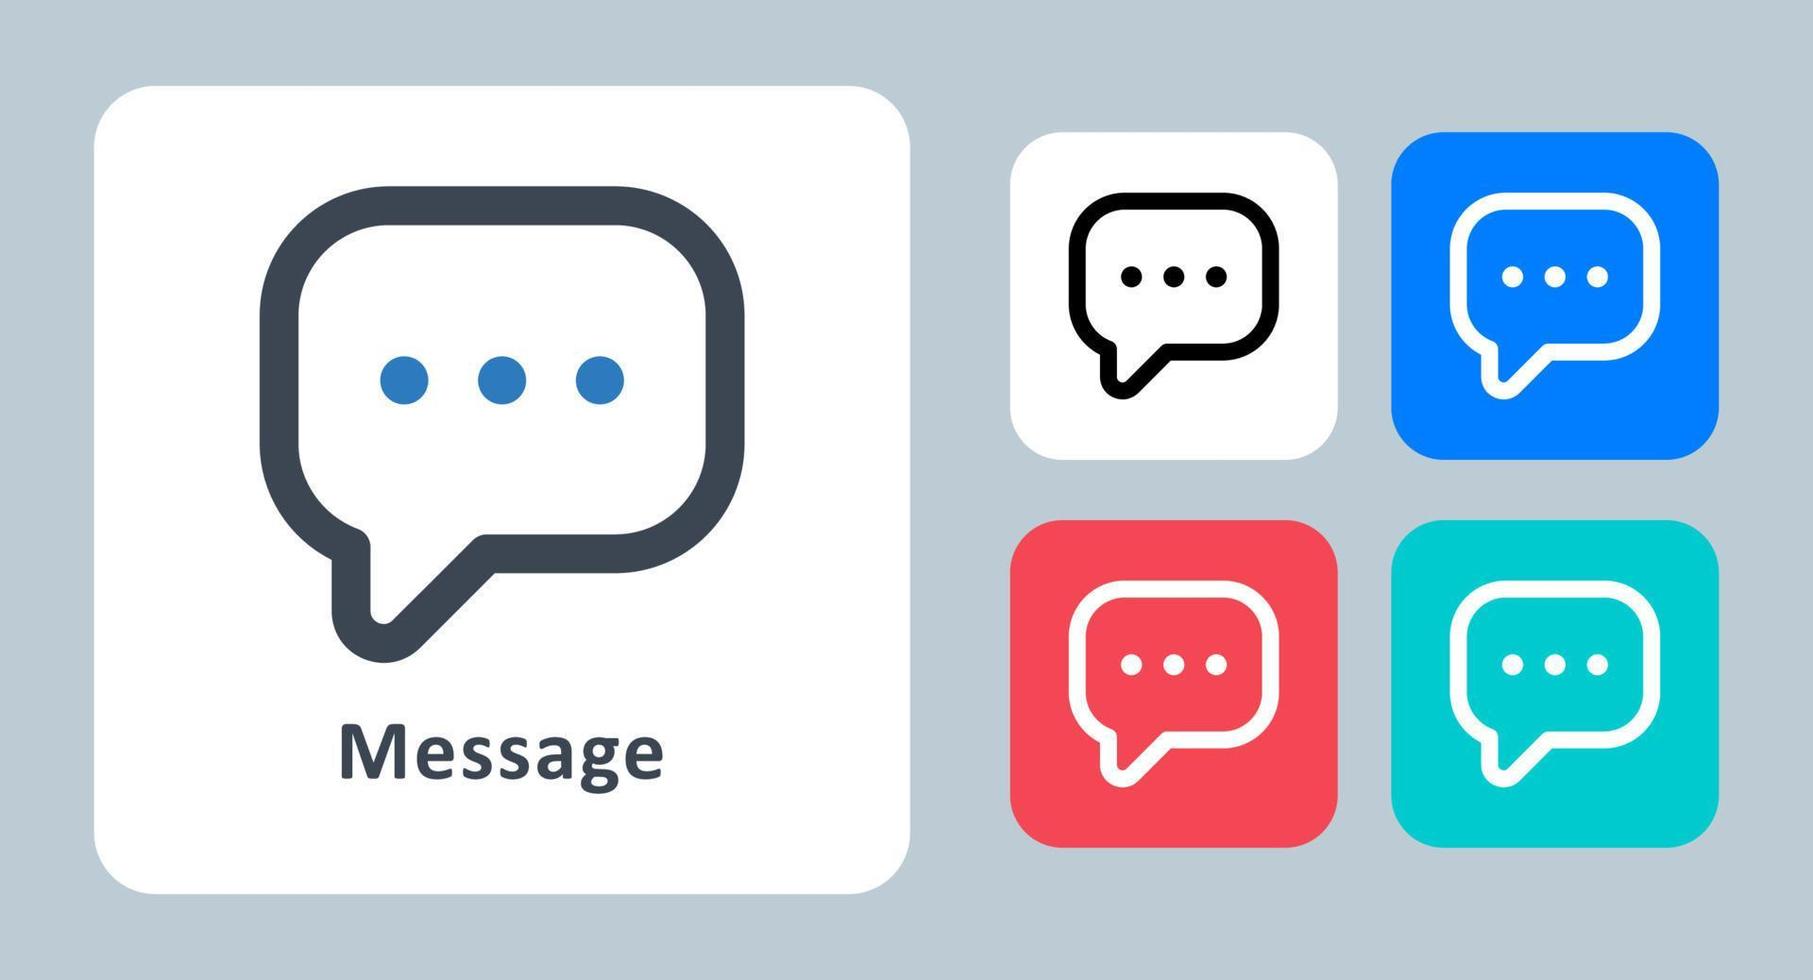 icono de mensaje - ilustración vectorial. chat, conversación, mensaje, charla, comentario, discurso, burbuja, comunicación, línea, contorno, plano, iconos. vector